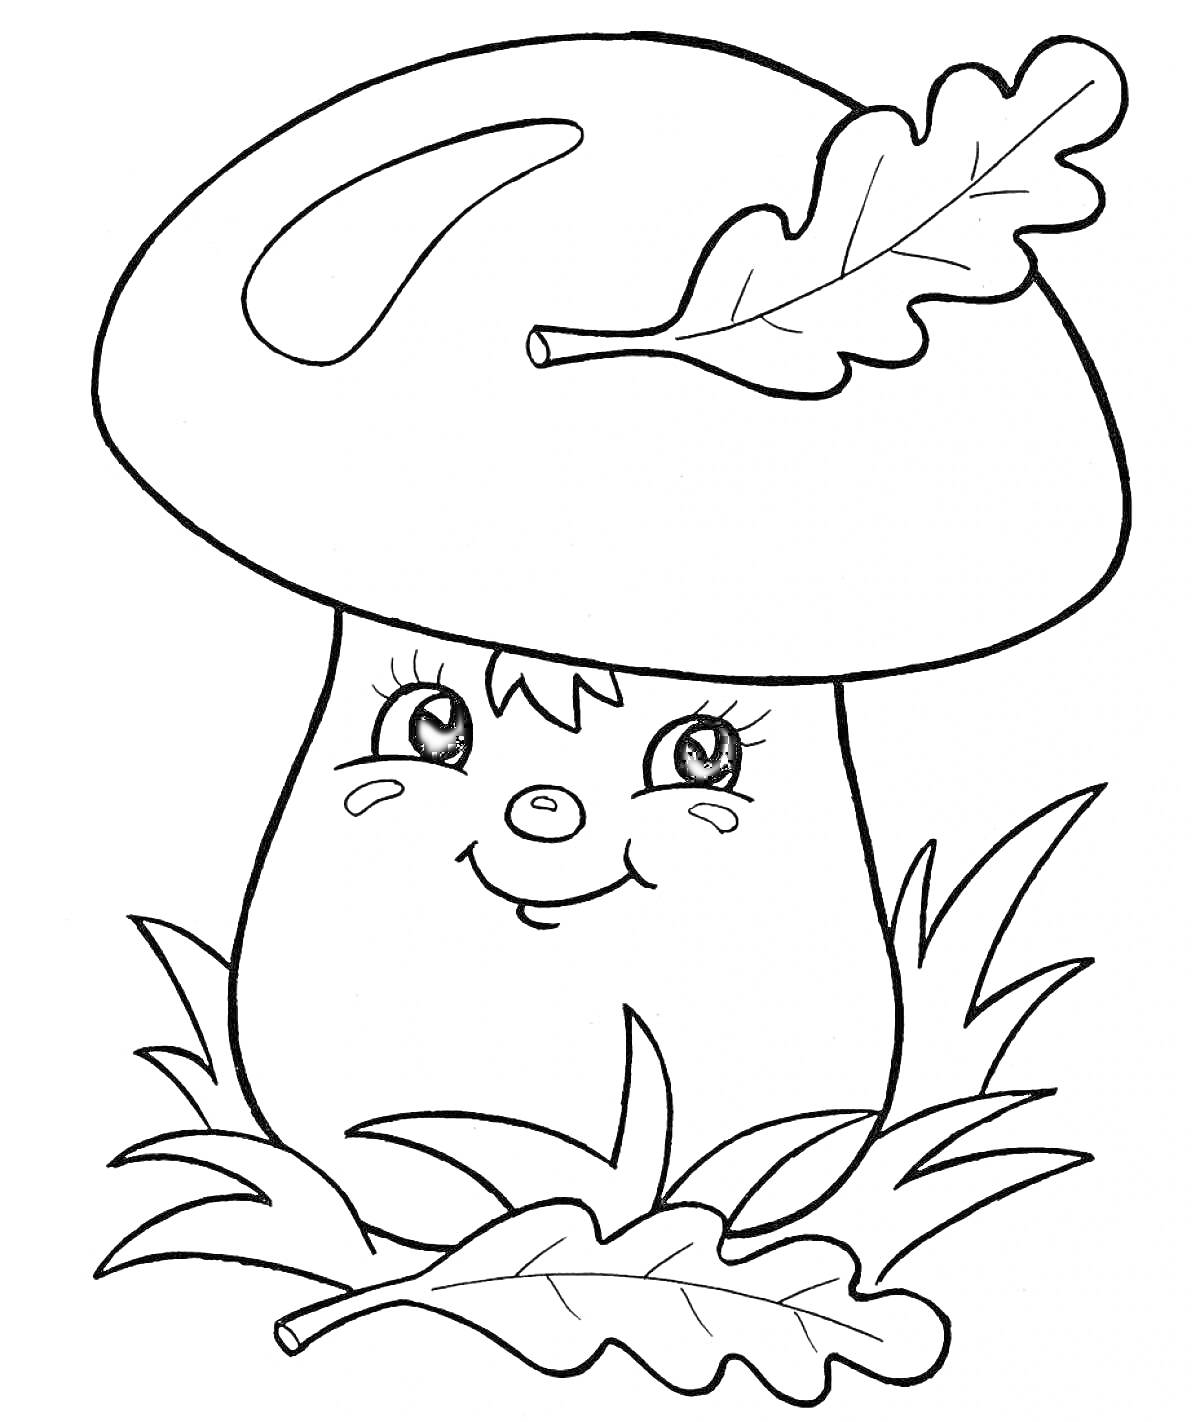 Улыбающийся гриб с листиком на шляпке и травой вокруг